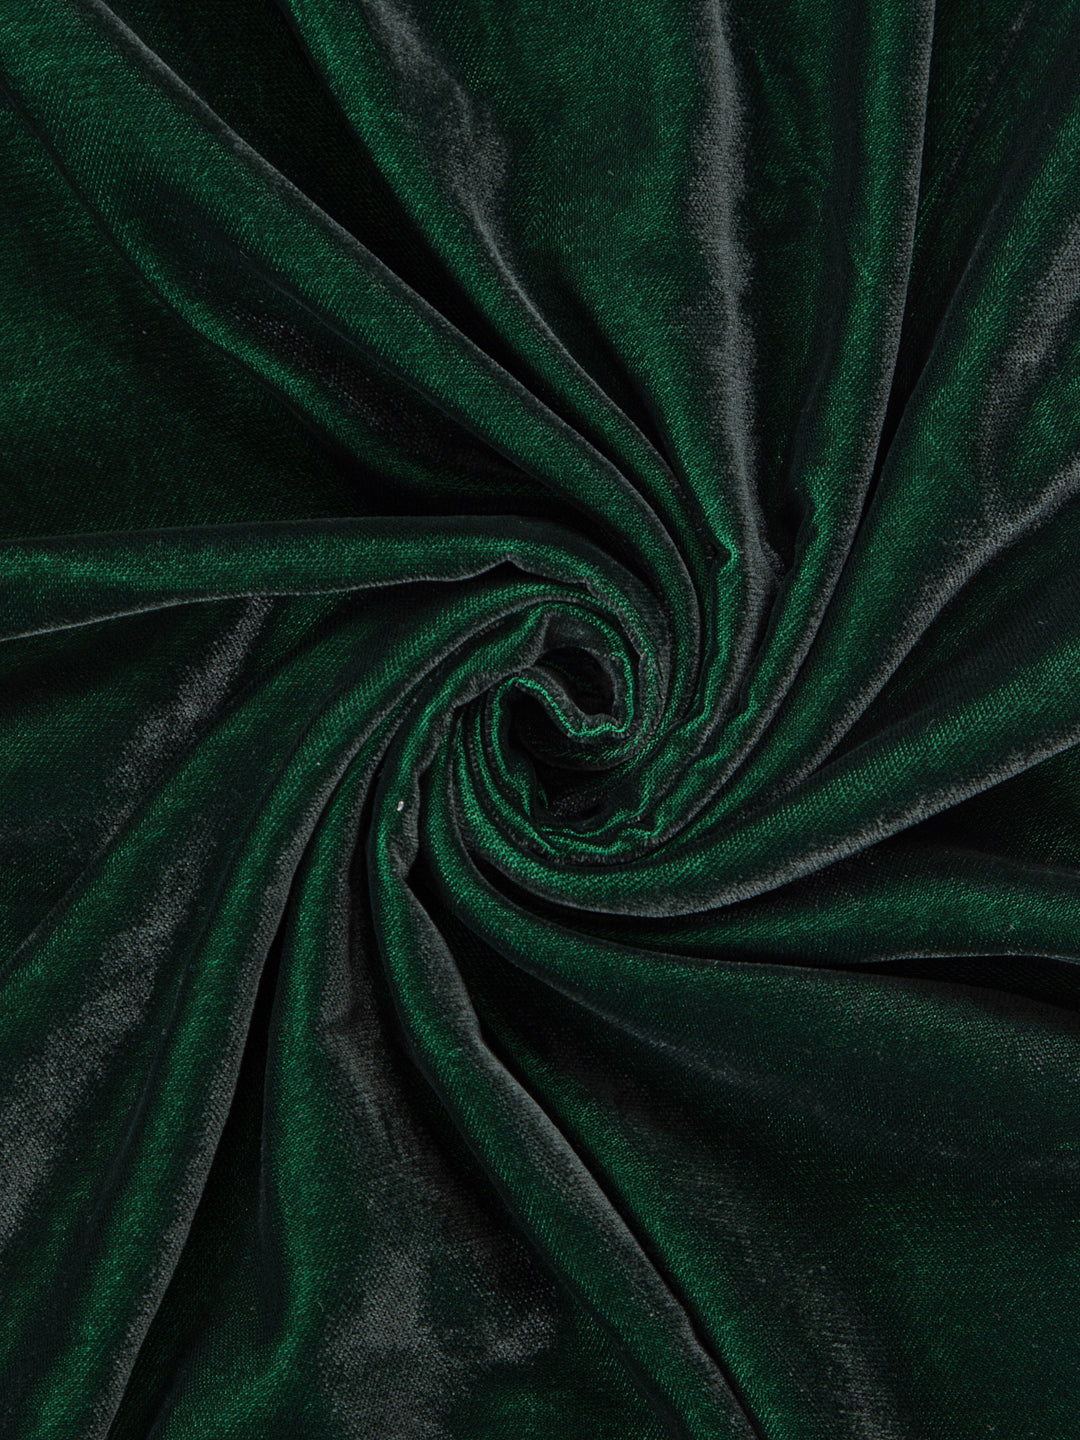 Florentine Soft Shine Textured Emerald Green Colour Chenille Velvet  Upholstery Fabric